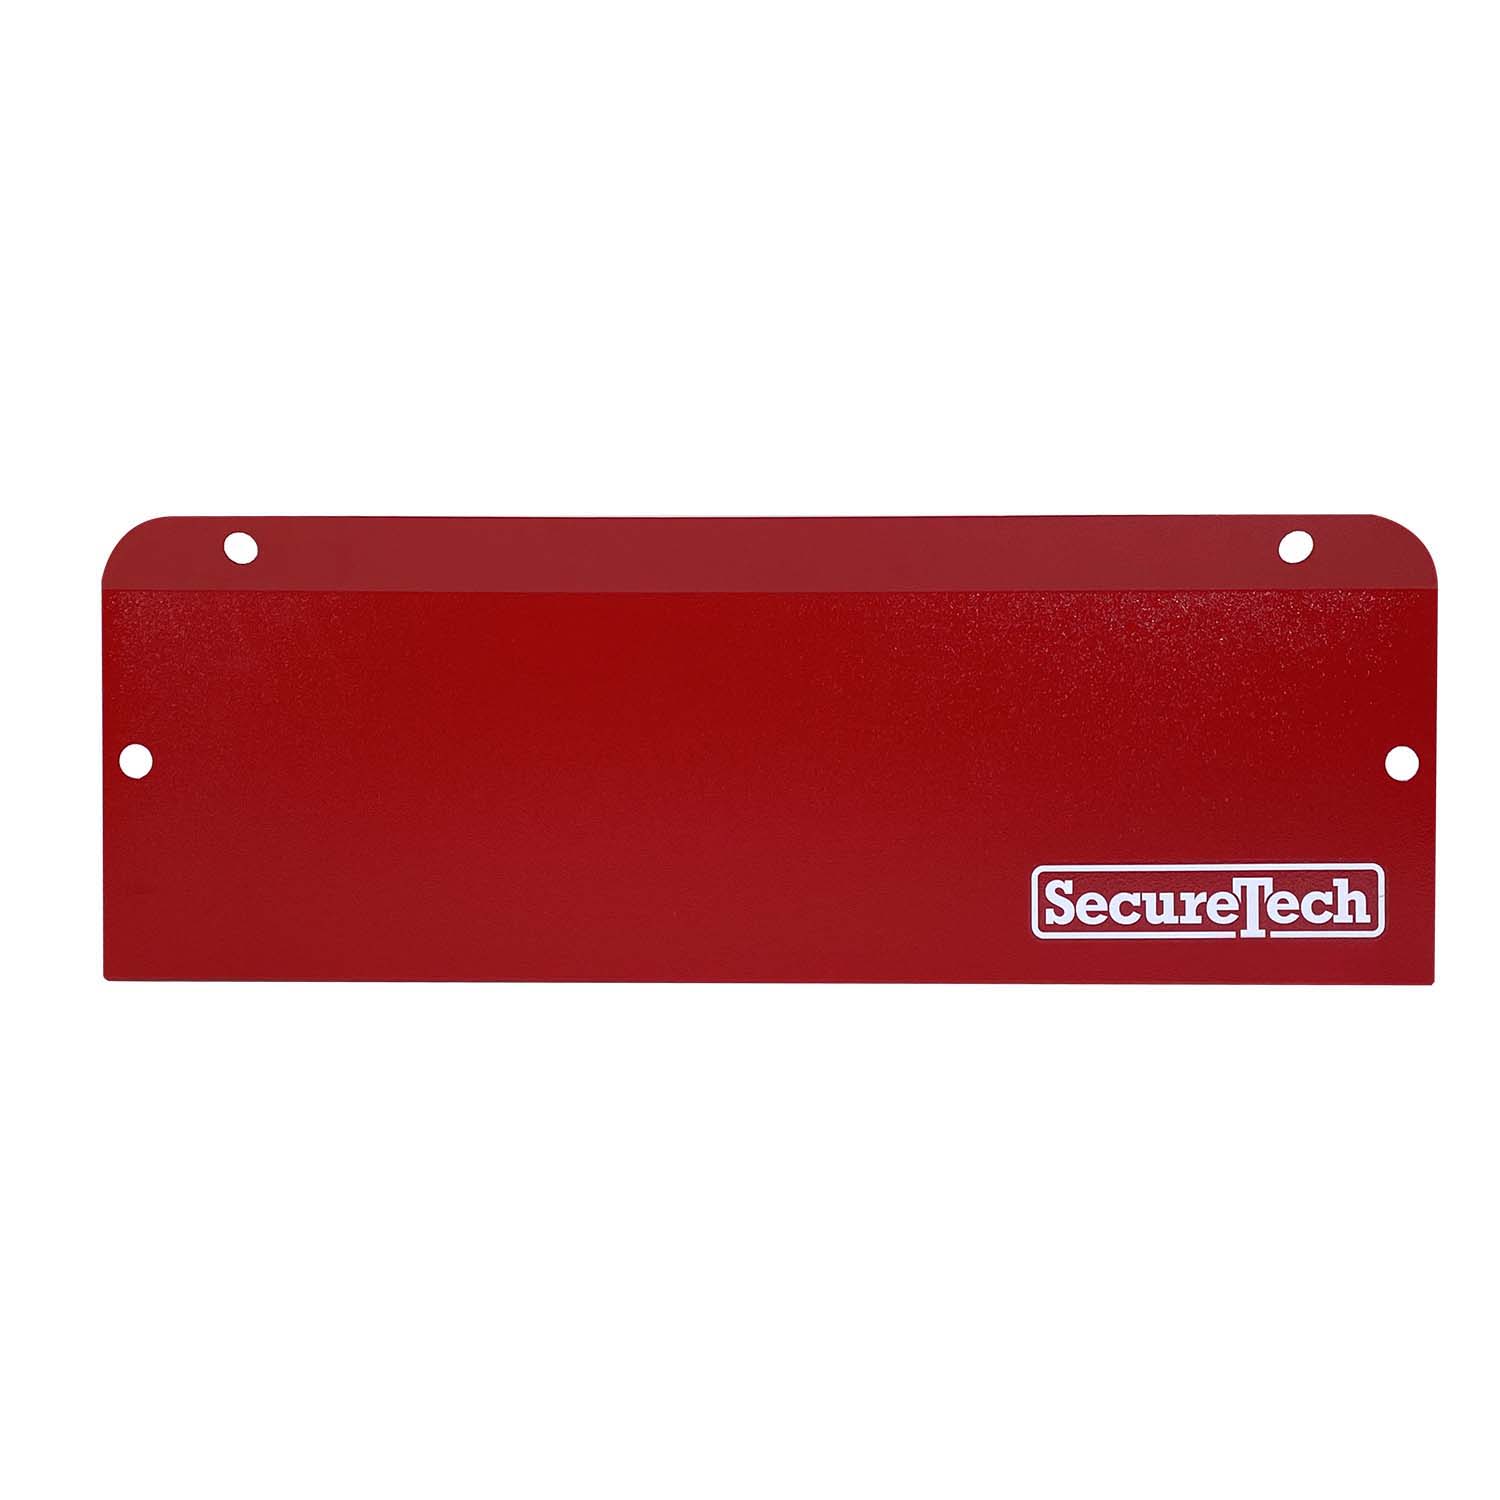 SecureTech SecureTech MP-A